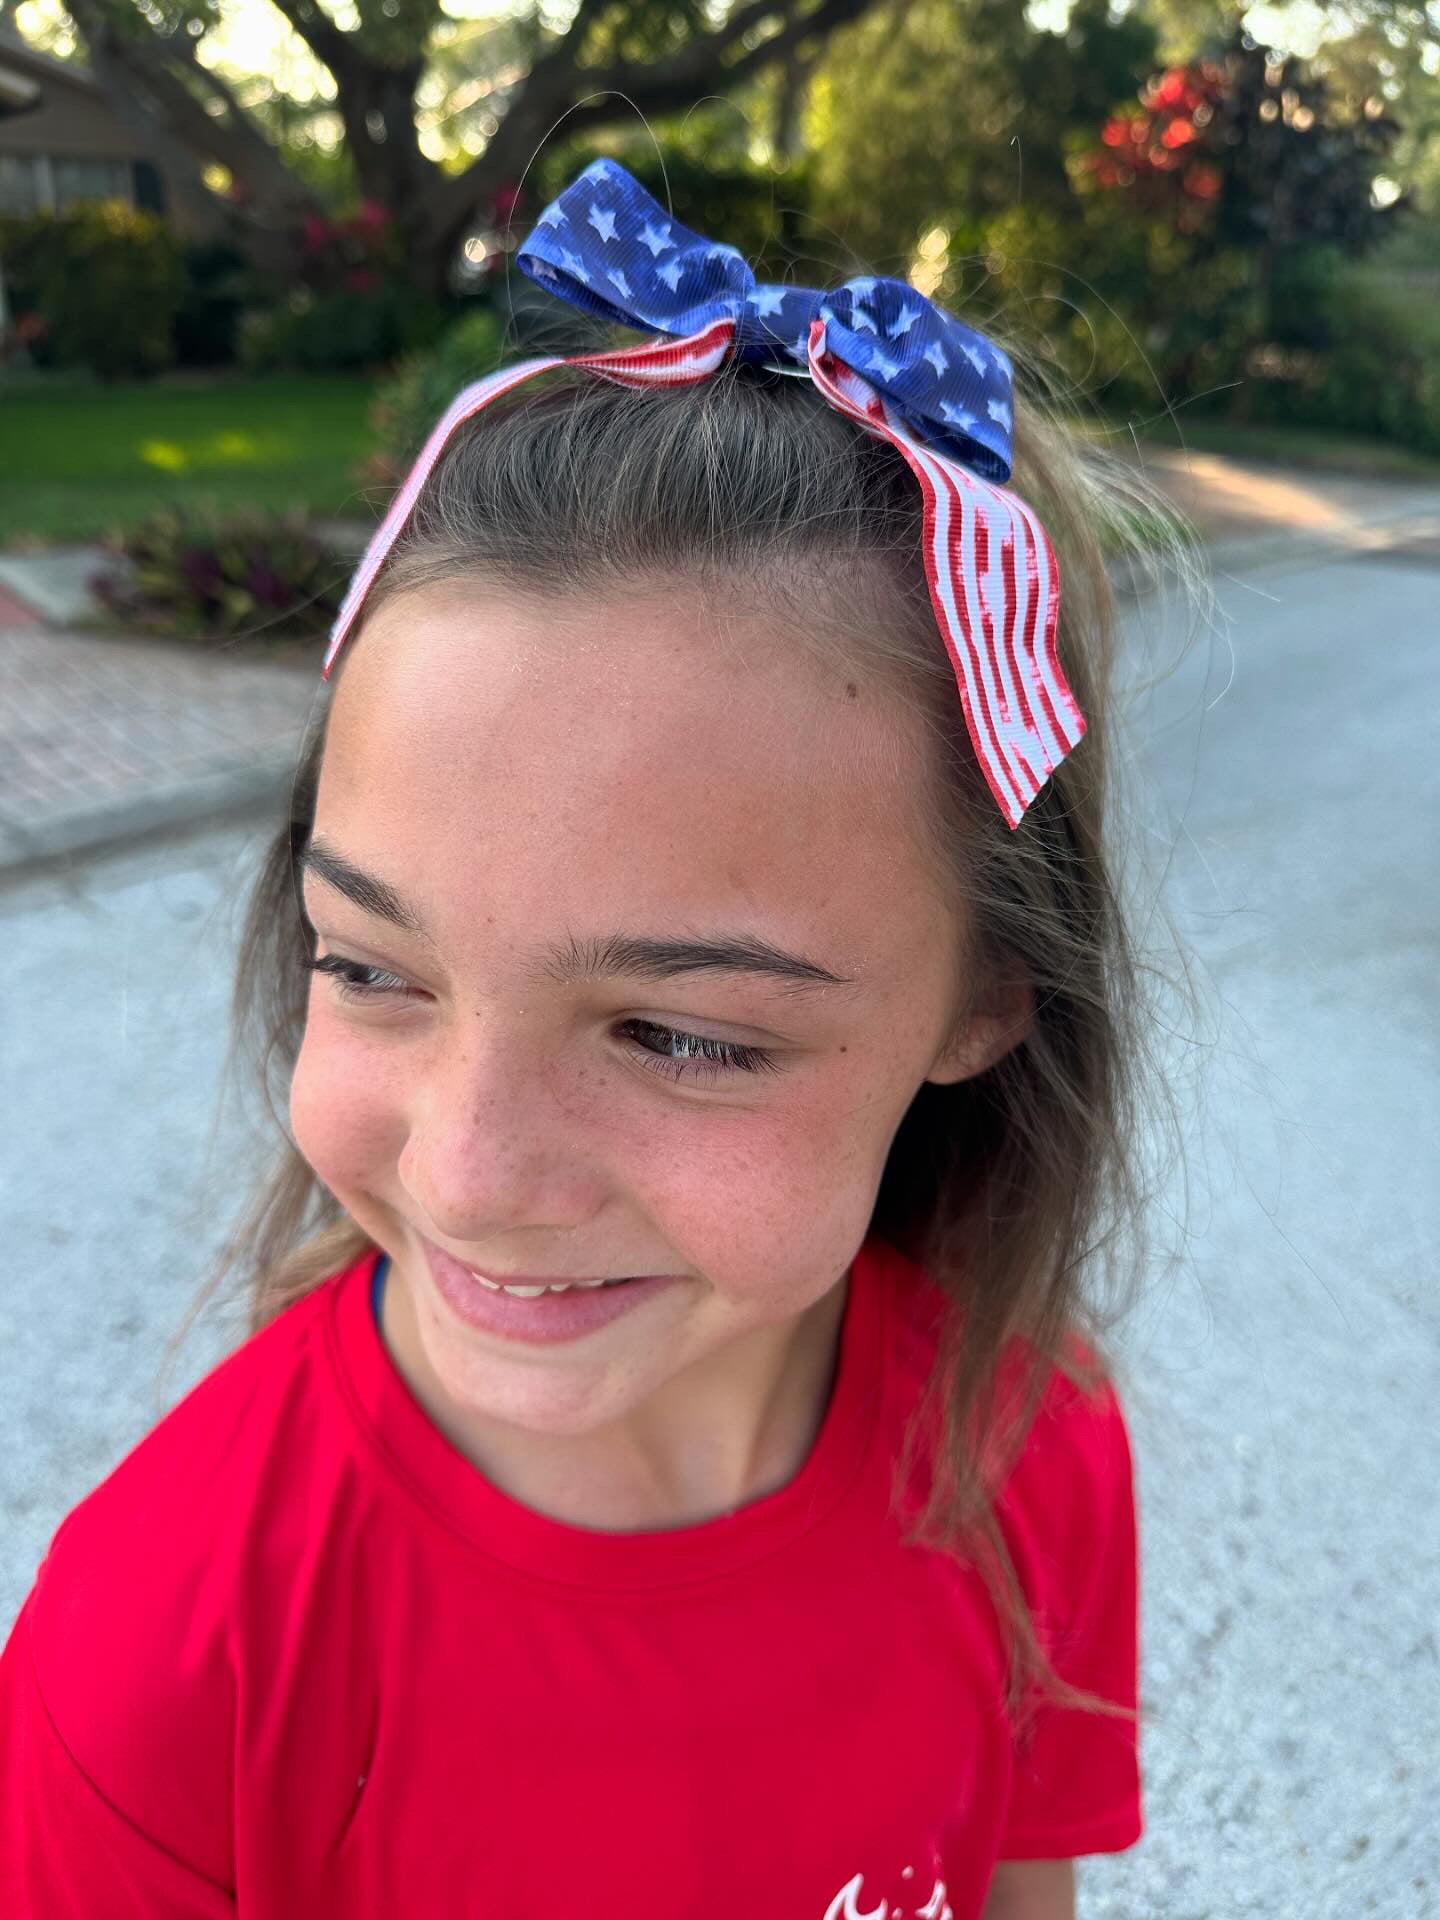 USA Flag Hair Bow